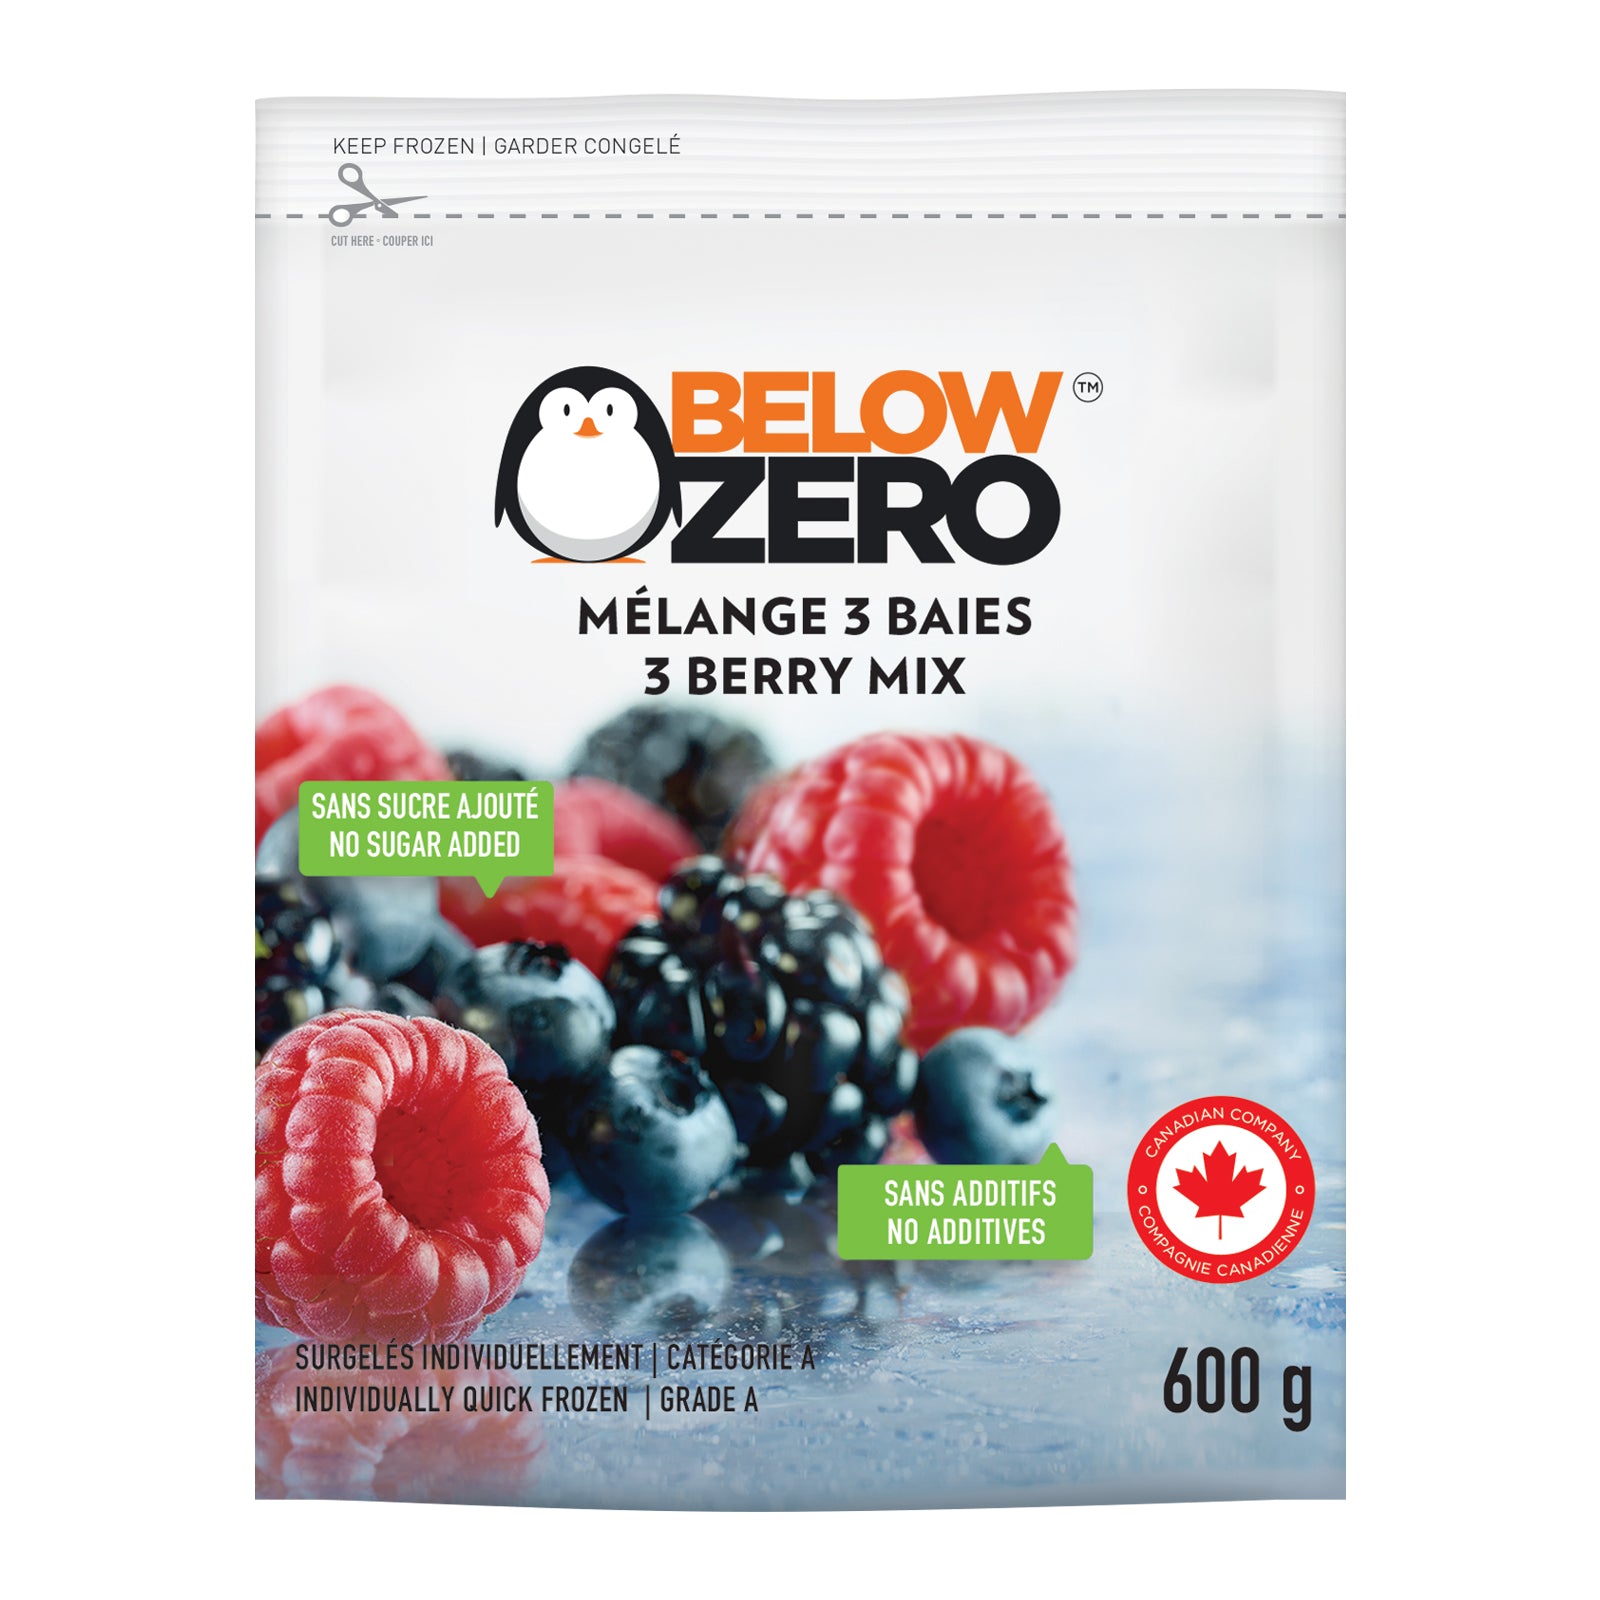 BELOW ZERO 3 berry mix